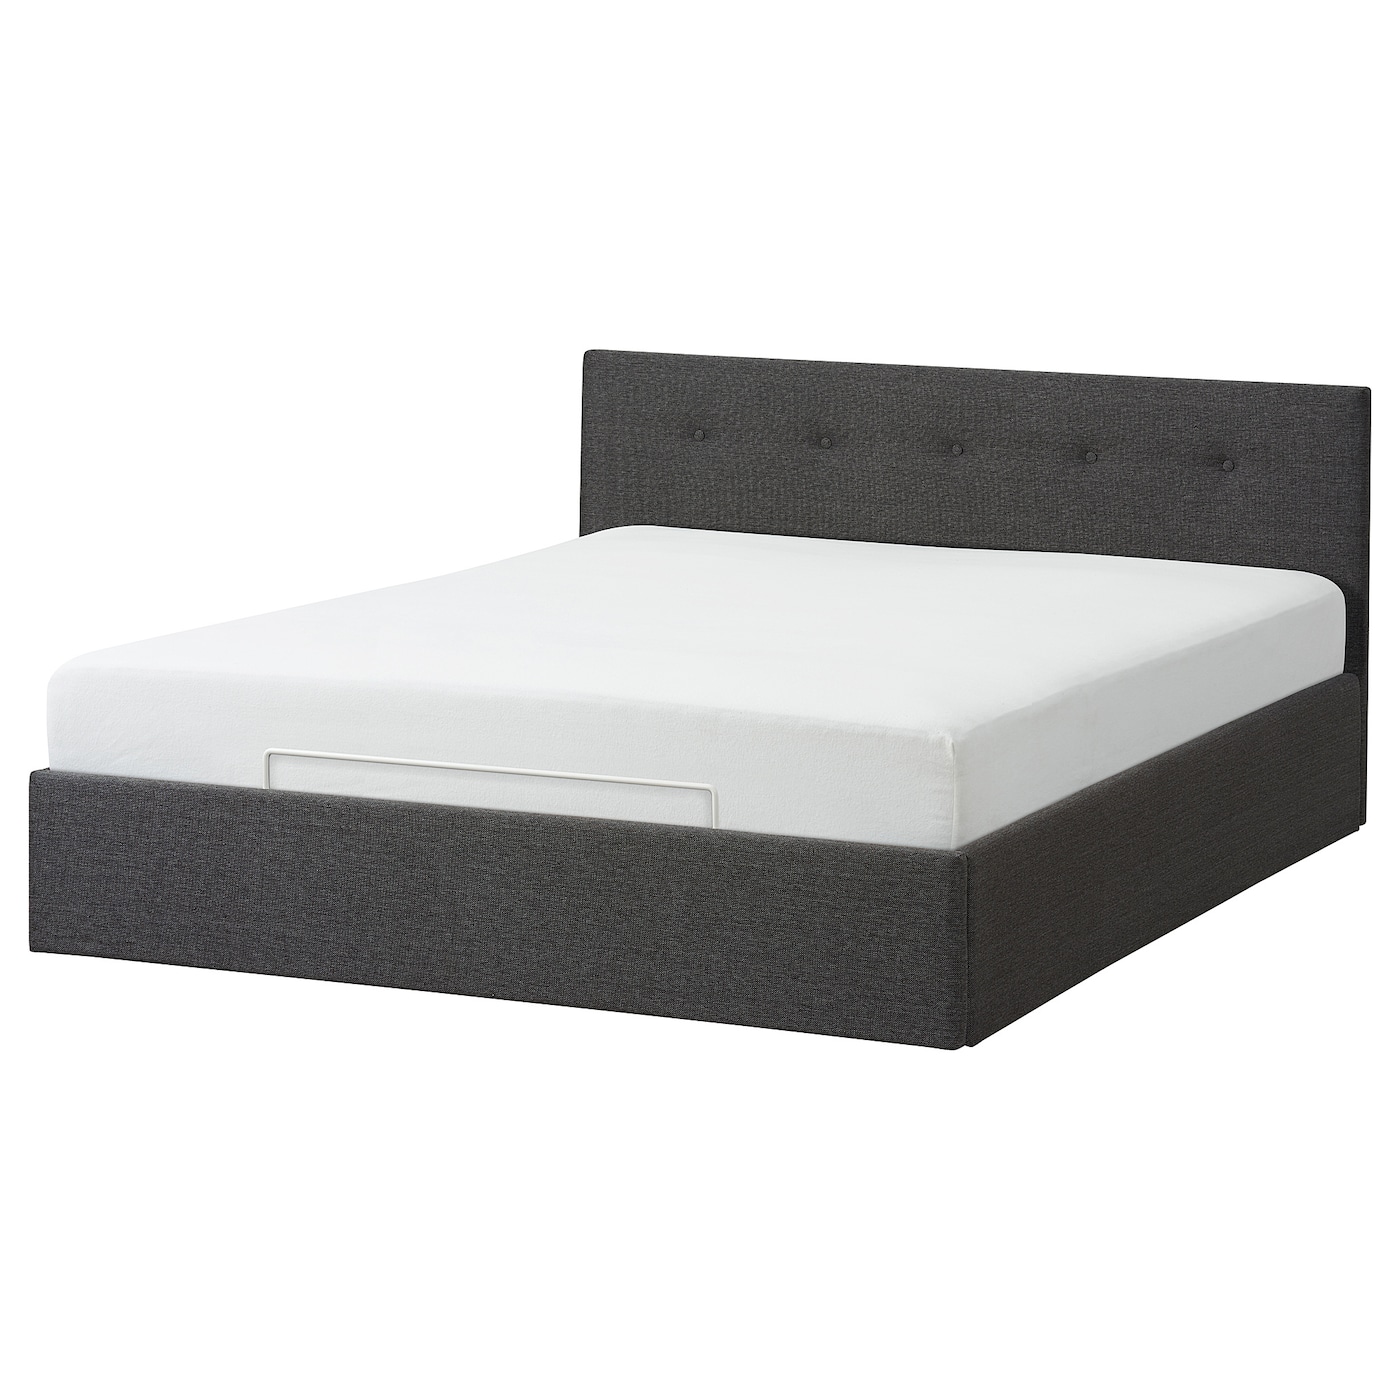 Кровать с ящиком - IKEA BJORBEKK, 200х160 см, серый, БЙОРБЕКК ИКЕА